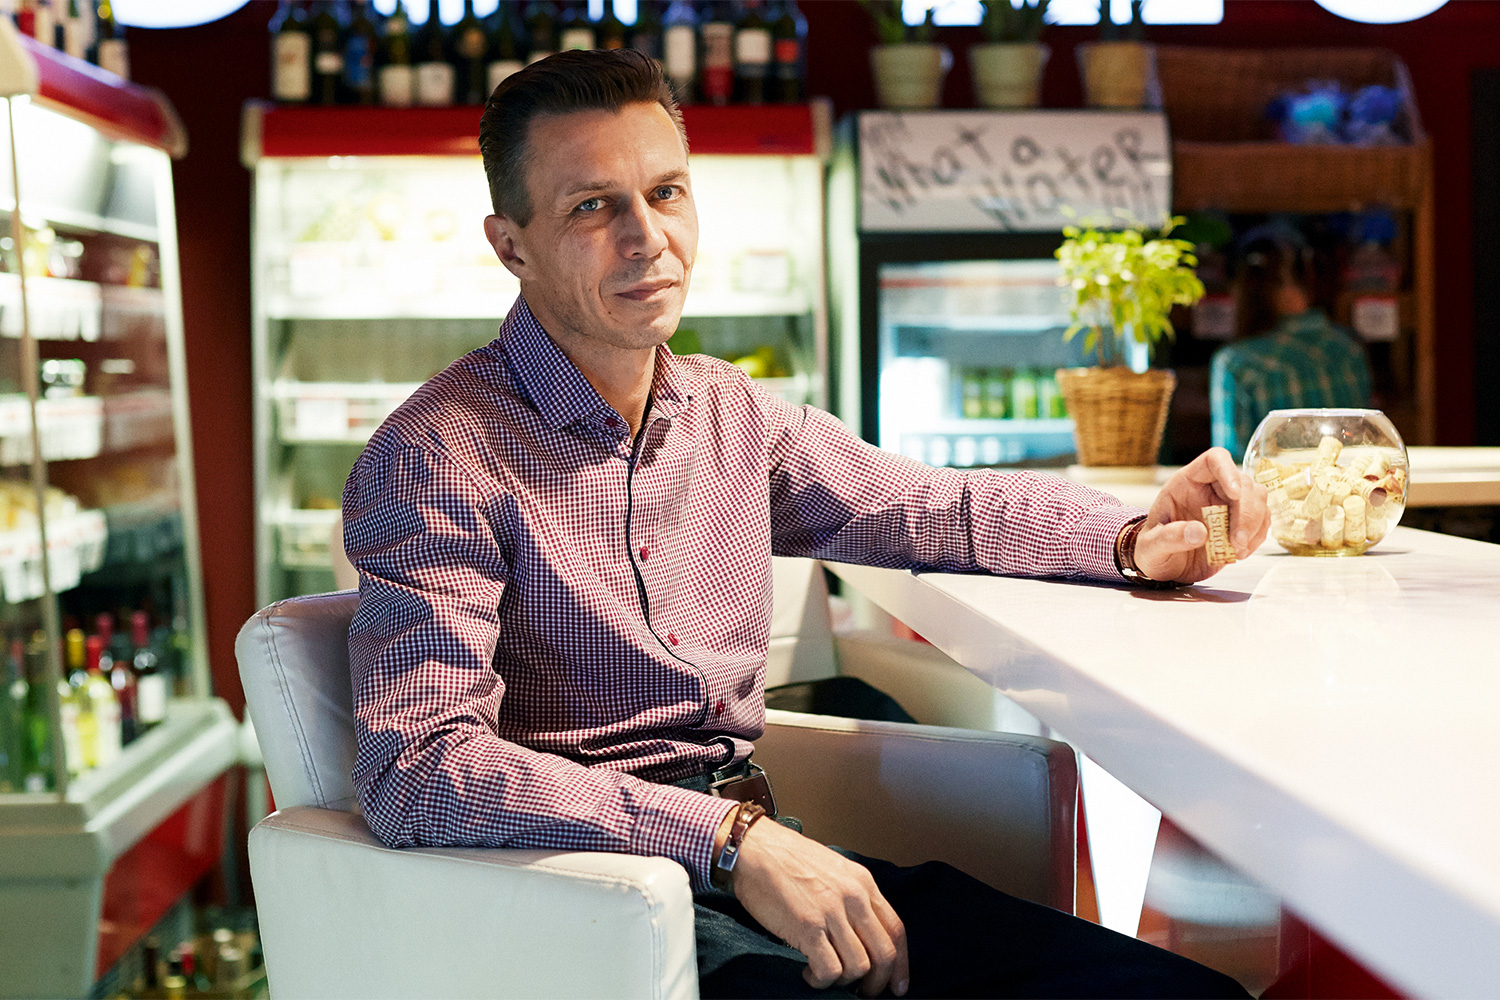 За небольшую плату в ресторане Sehr Schon, соучредителем которого является сомелье Денис Романов, можно устроиться и с собственной бутылкой